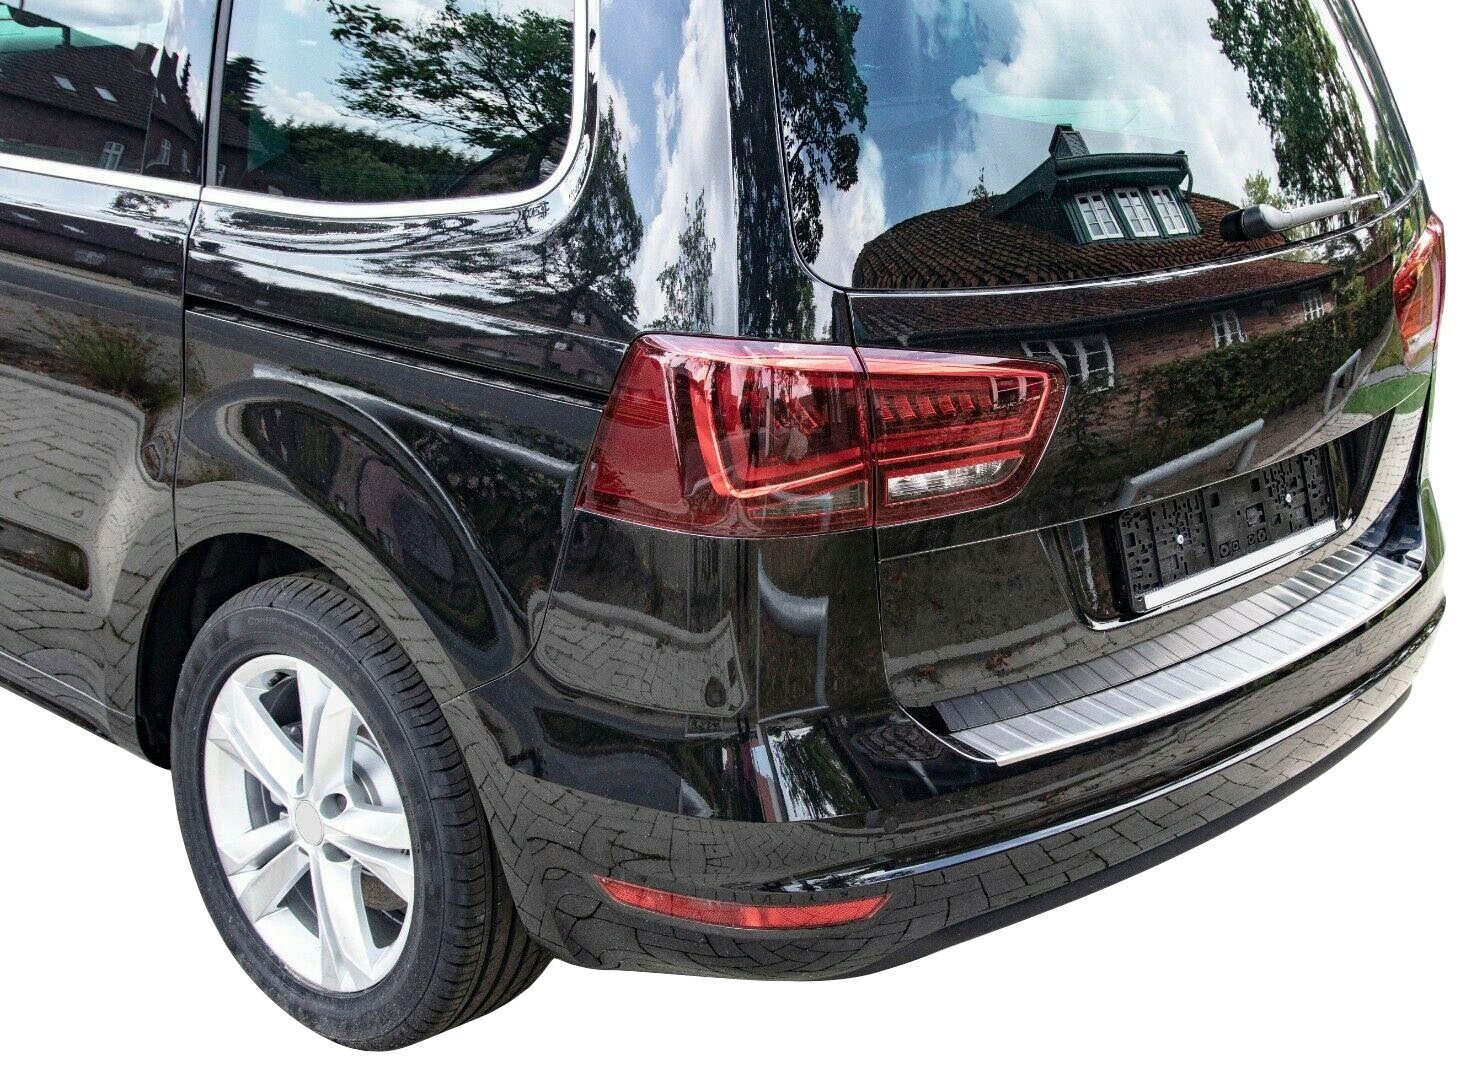 RECAMBO Ladekantenschutz, Zubehör für VW PASSAT B8 VARIANT + ALLTRACK, ab  2014, Edelstahl chrom poliert